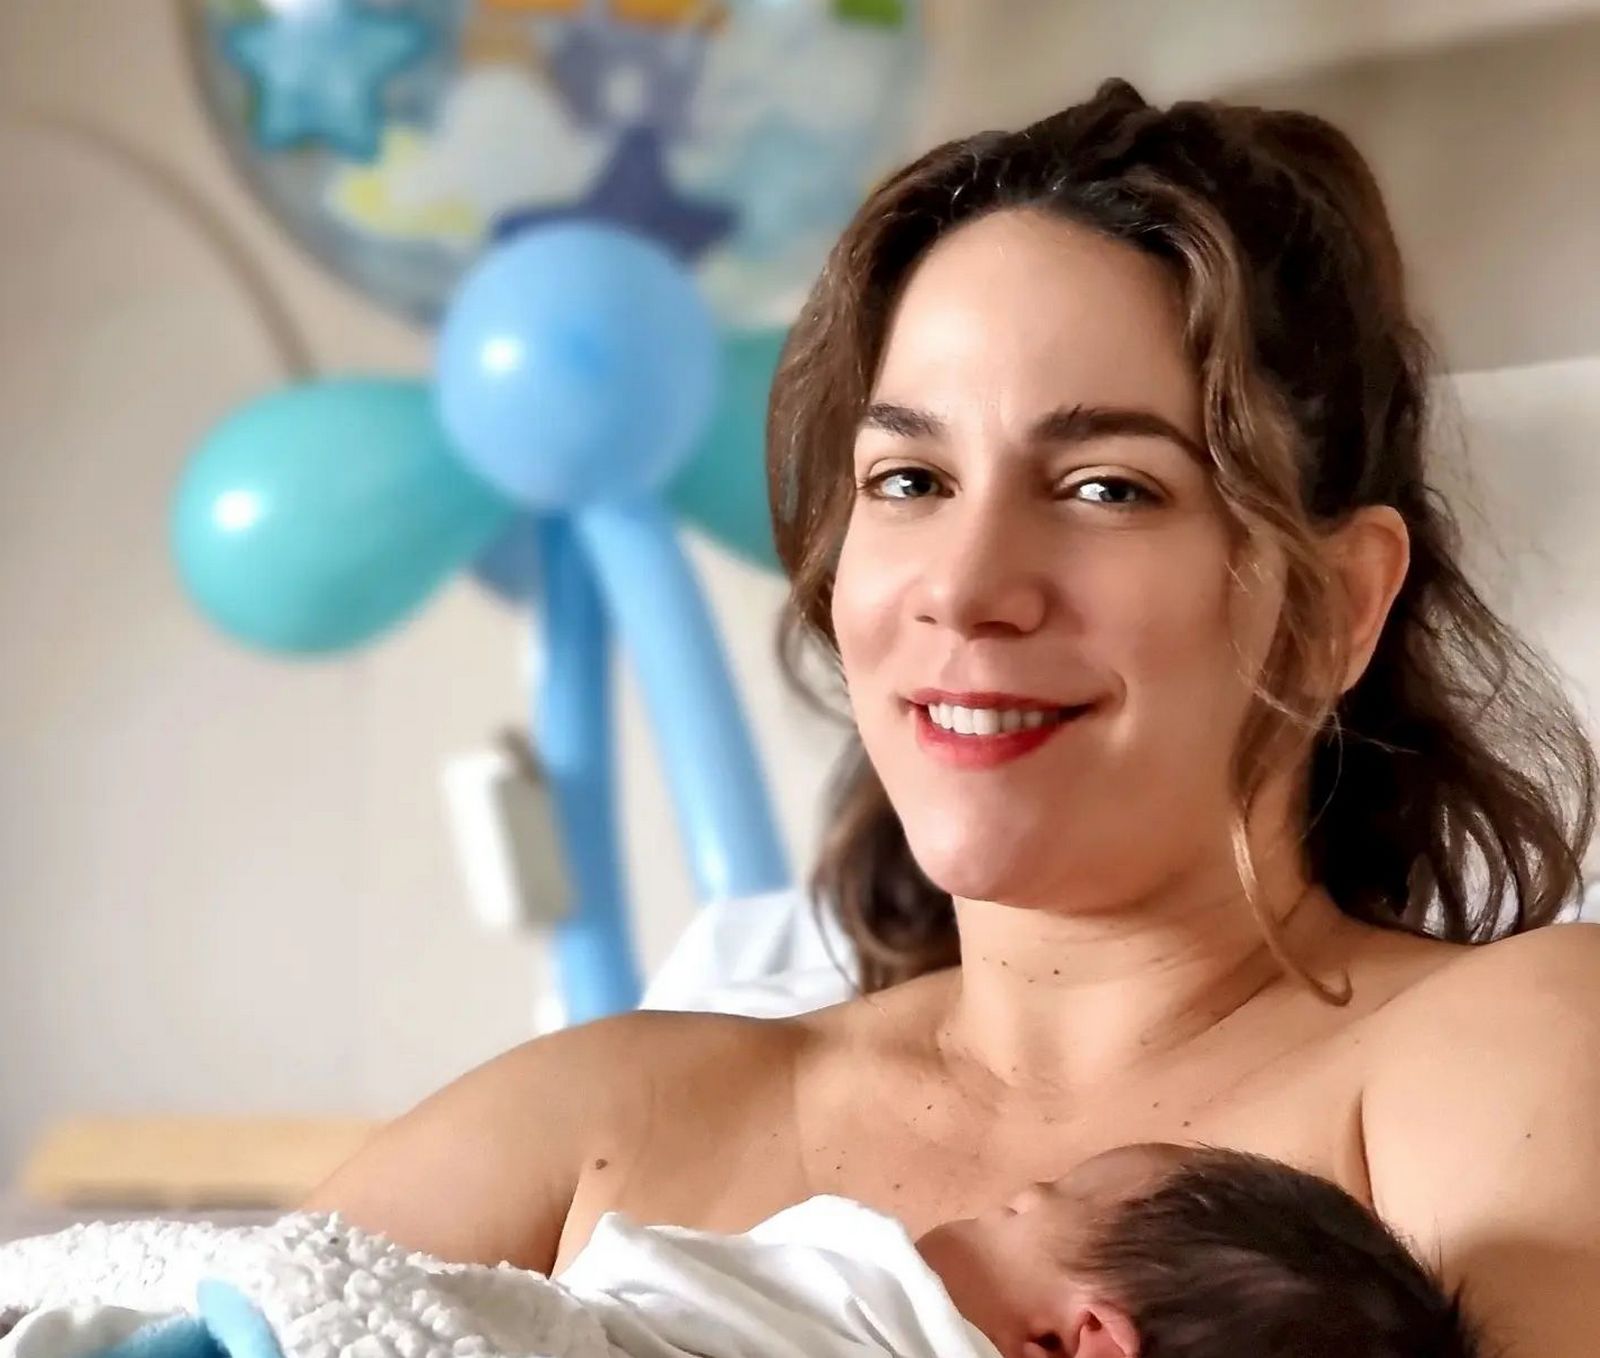 κατερίνα στικούδη: αγκαλιά με τον νεογέννητο γιο της - οι πρώτες φωτογραφίες